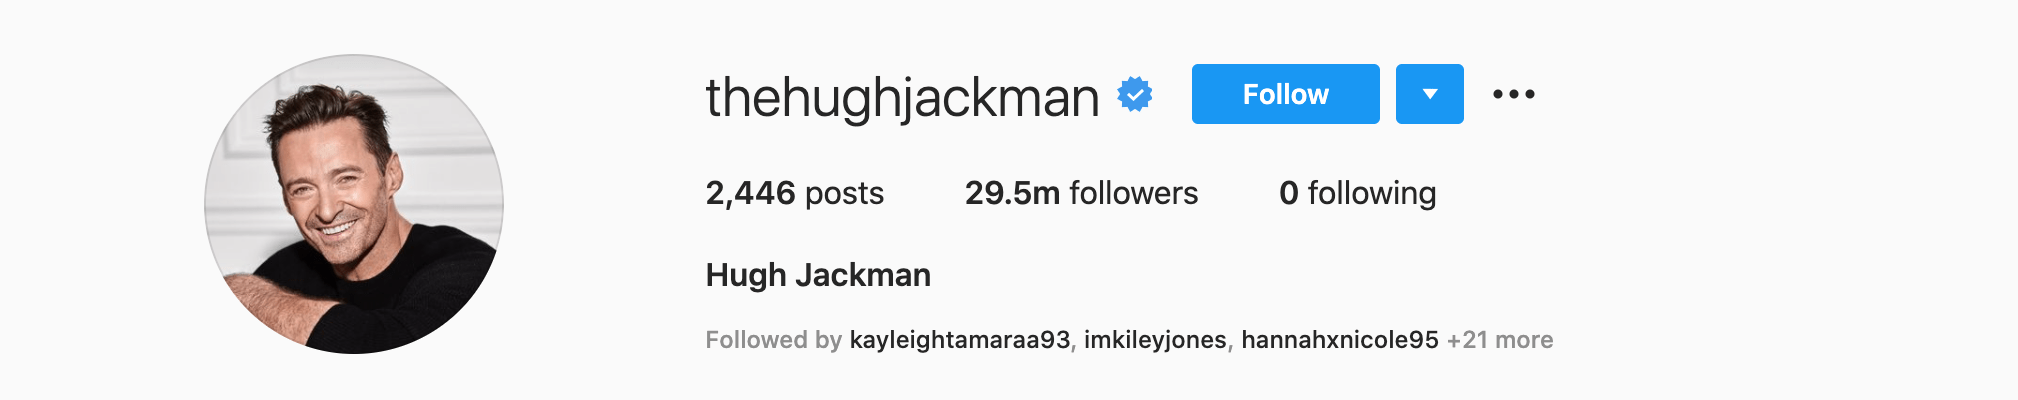 Top Instagram Influencers - HUGH JACKMAN